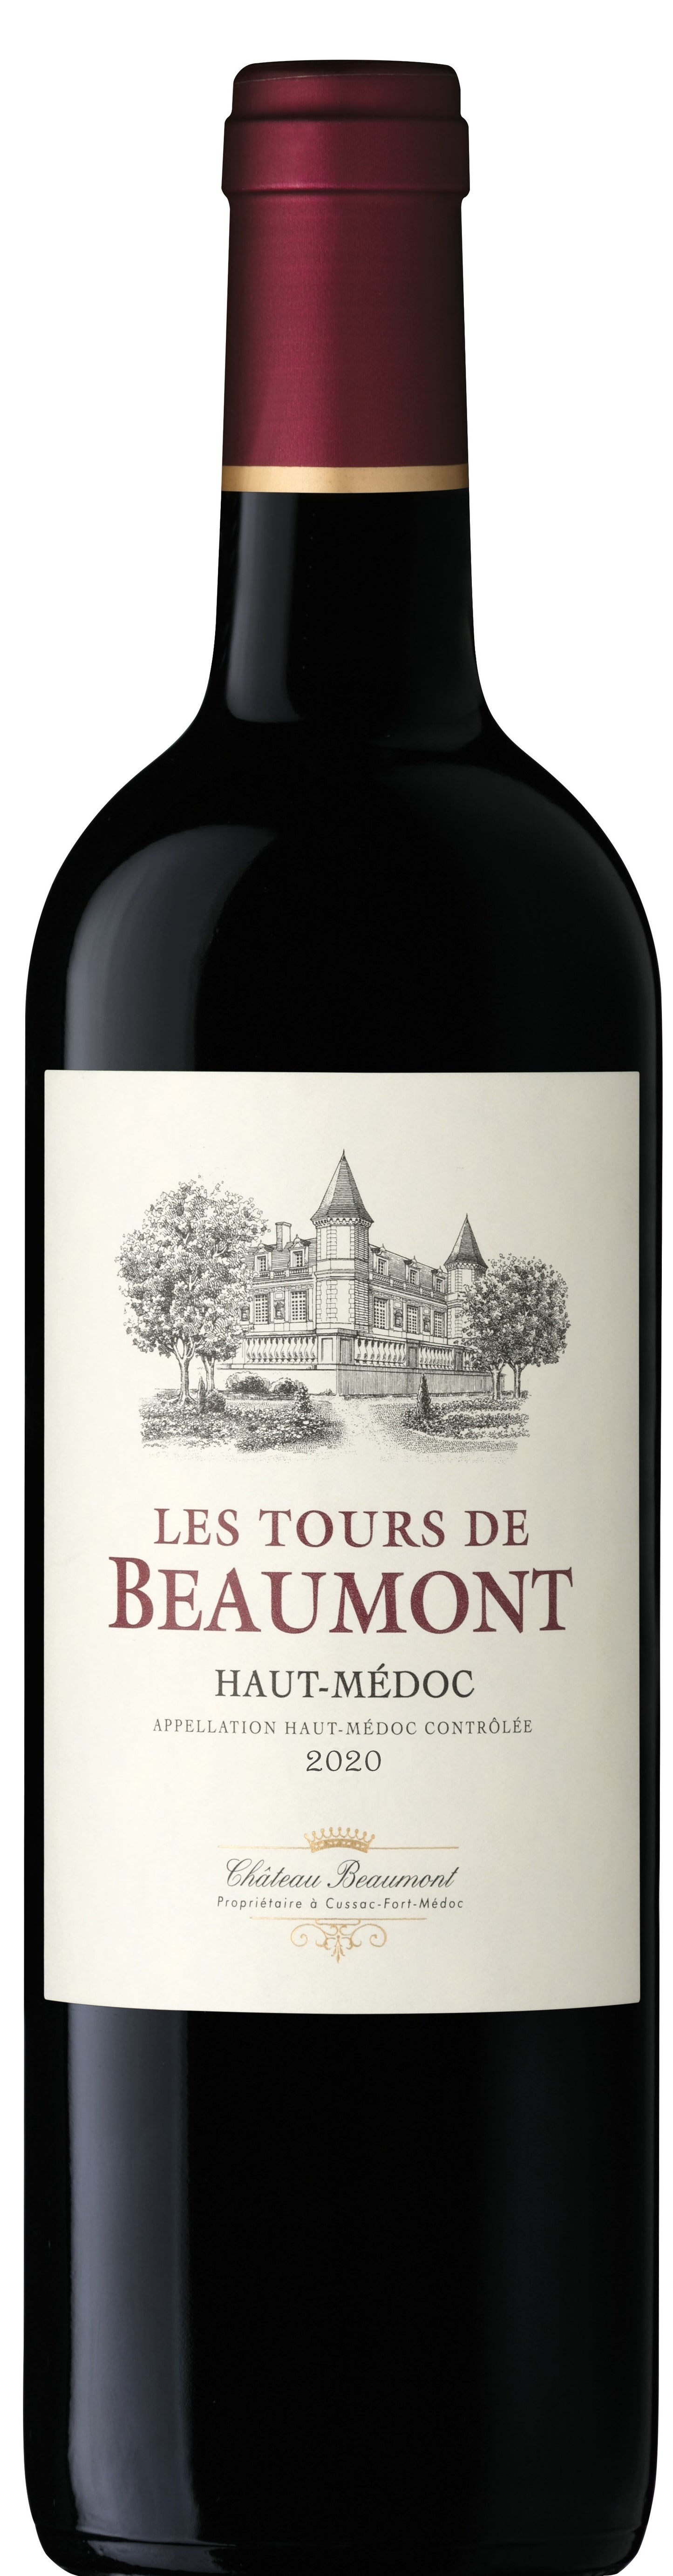 Les Tours de Beaumont - Merlot/Cabernet Sauvignon/Petit Verdot - Haut-Medoc